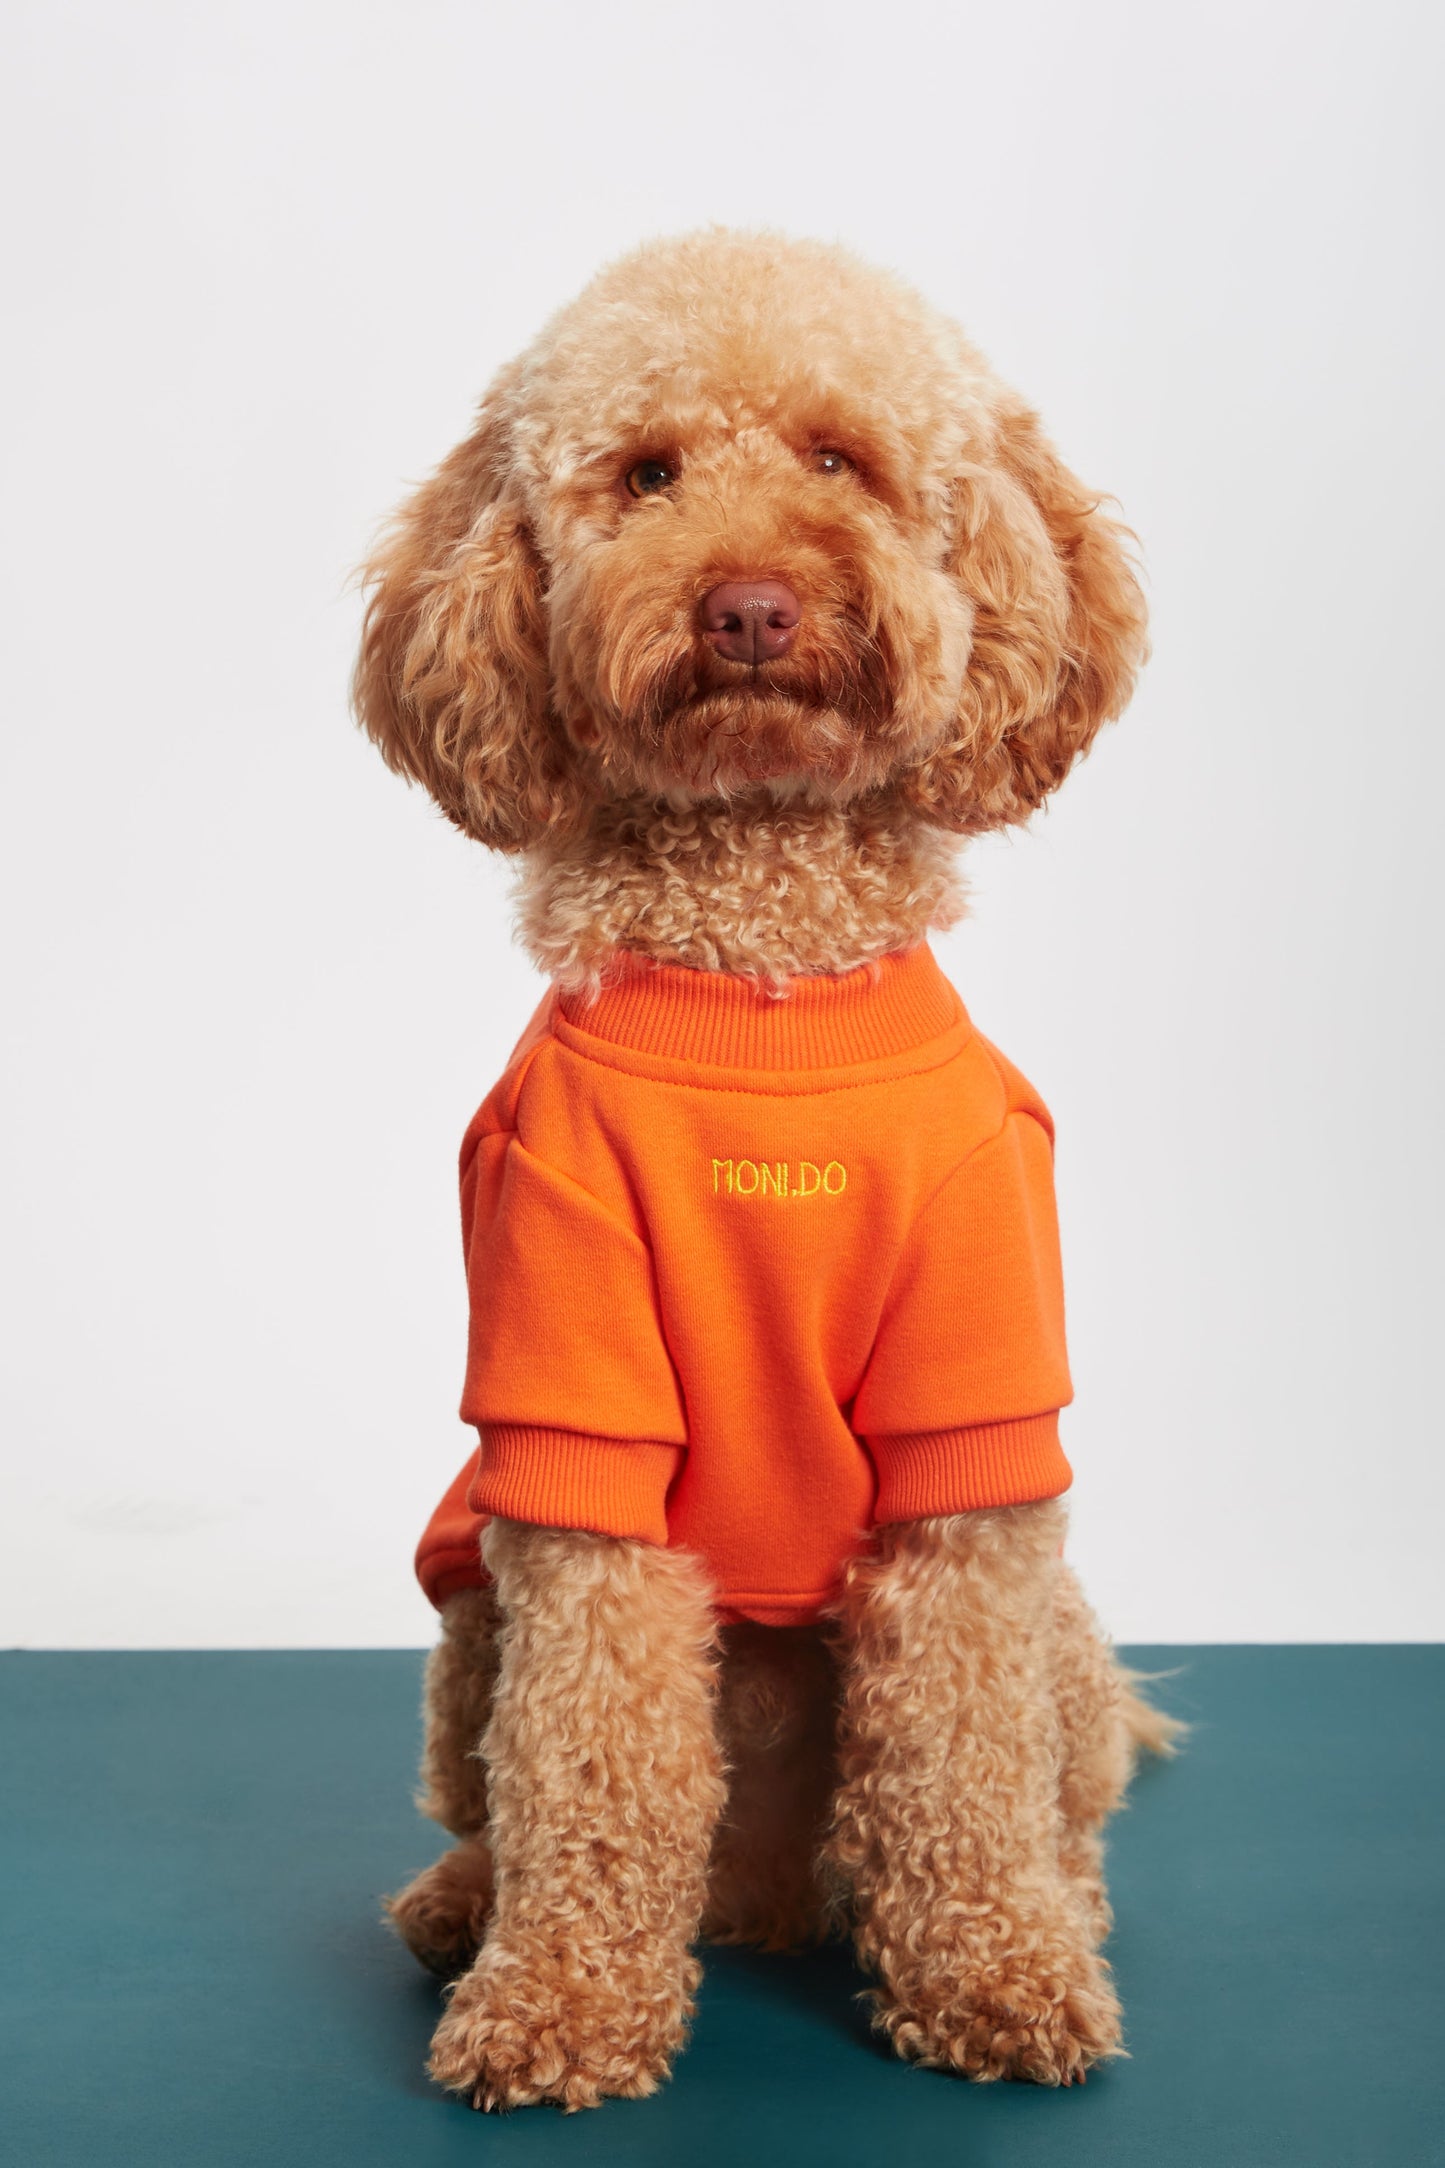 
                  
                    Turuncu Köpek Sweatshirt - 'Whatever' Sloganlı
                  
                